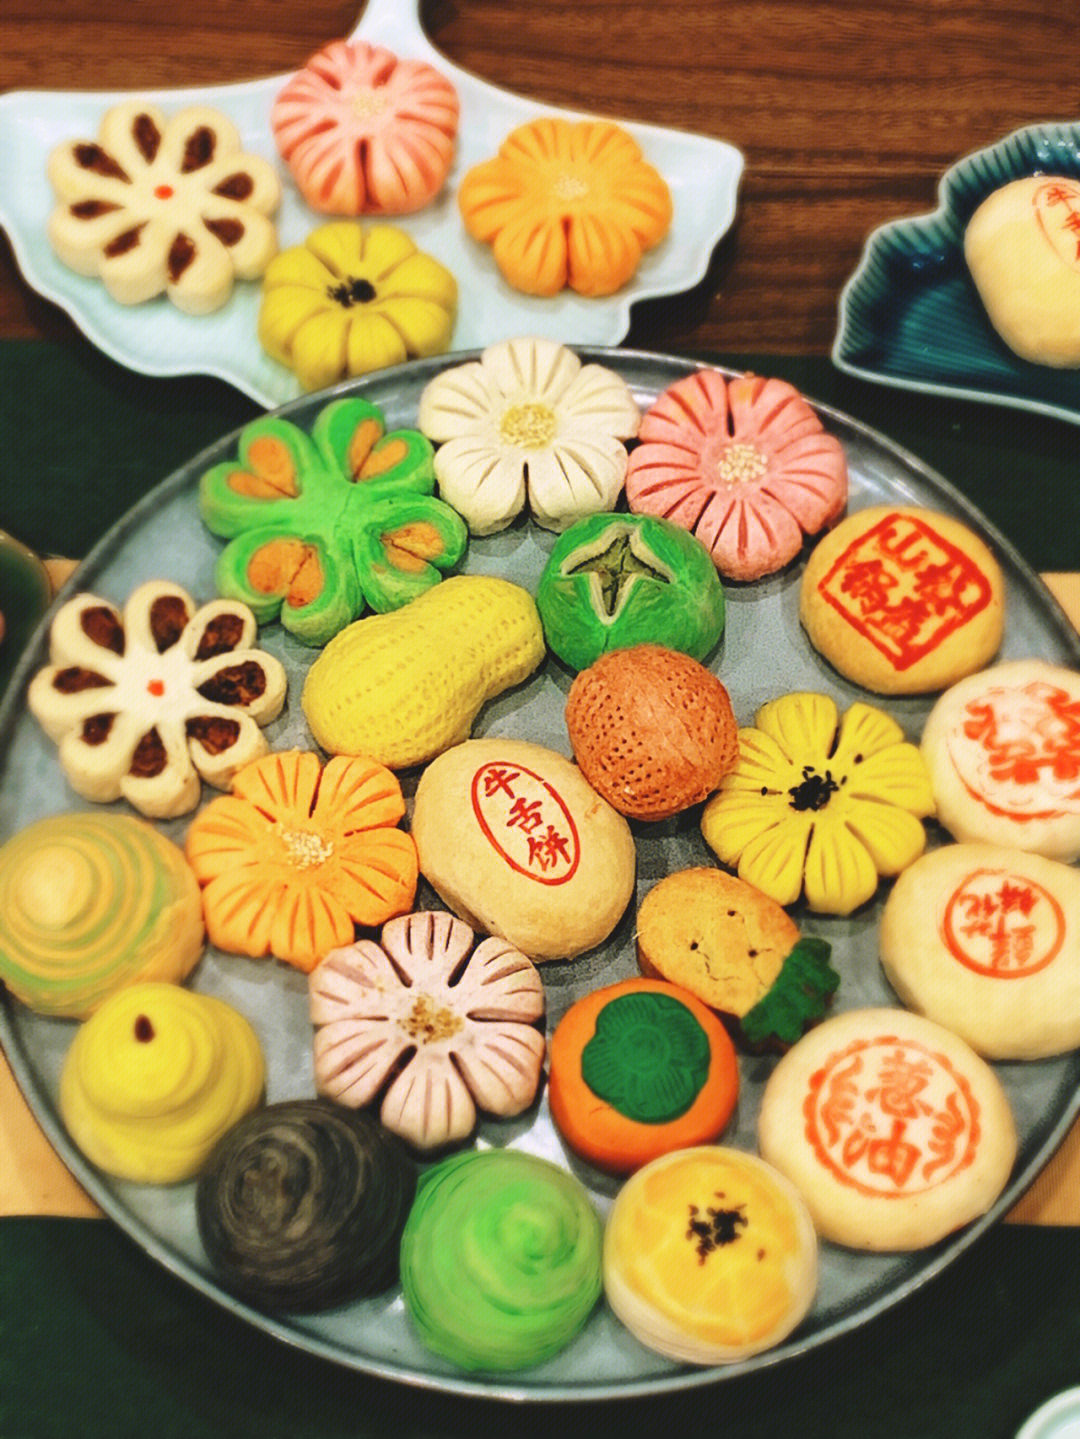 中国八大传统糕点图片